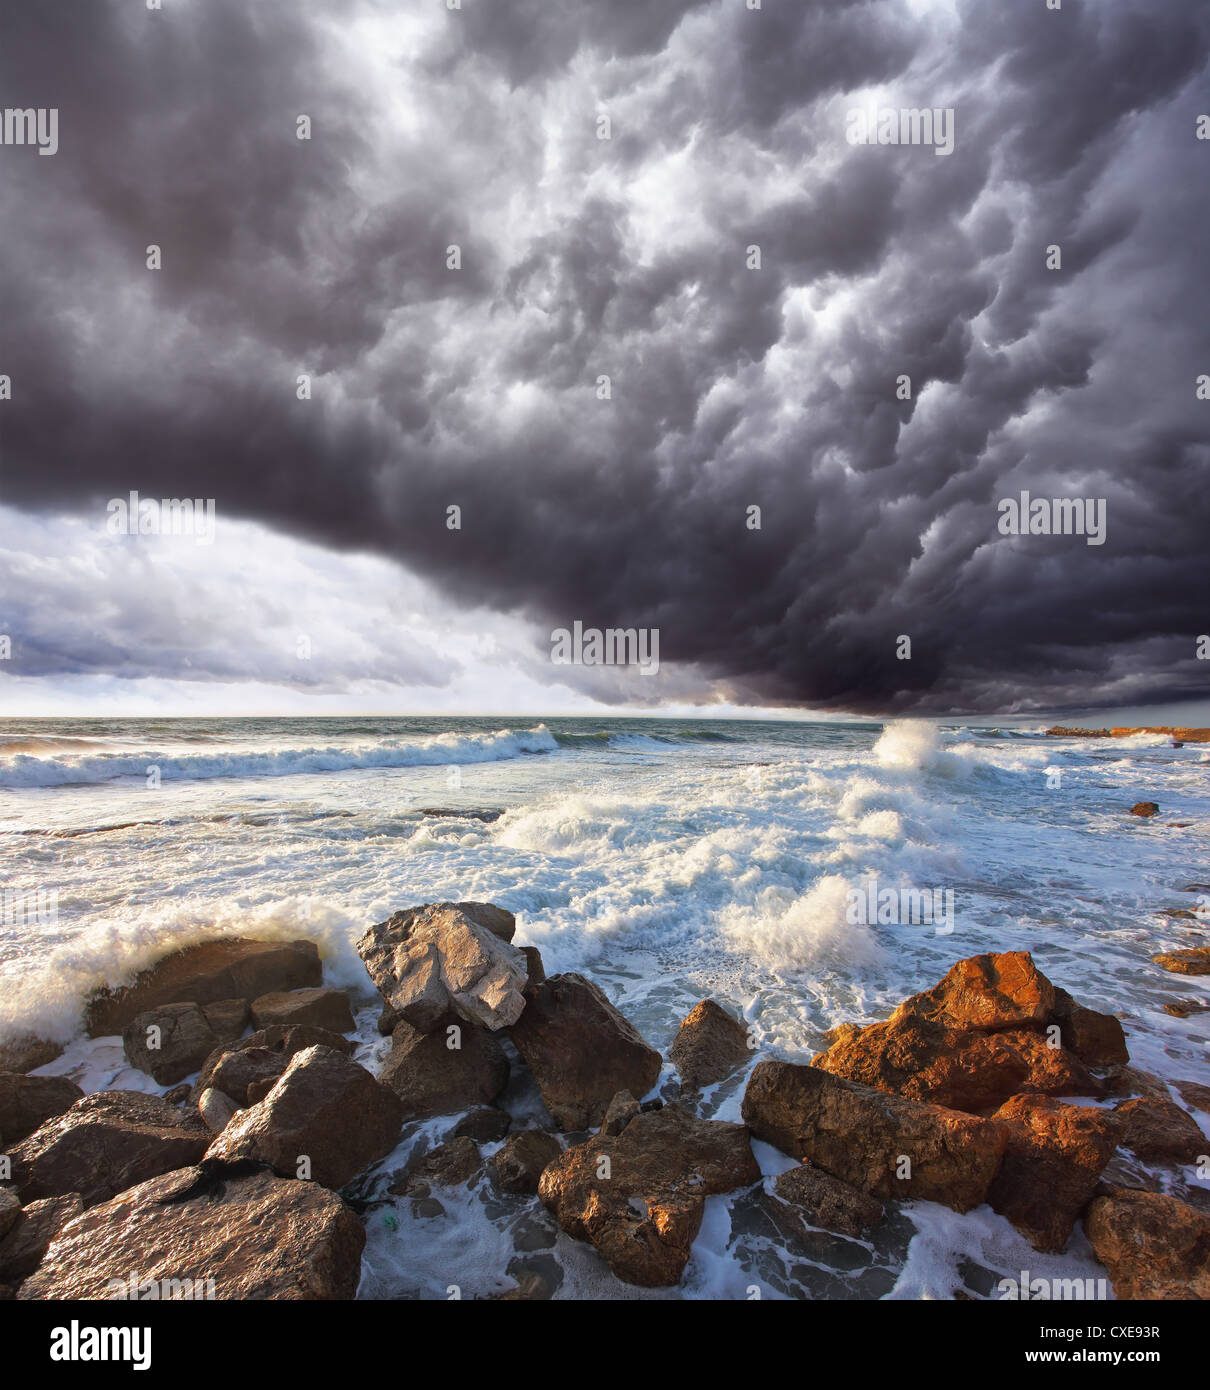 La tempesta nube su infuria la surf Foto Stock